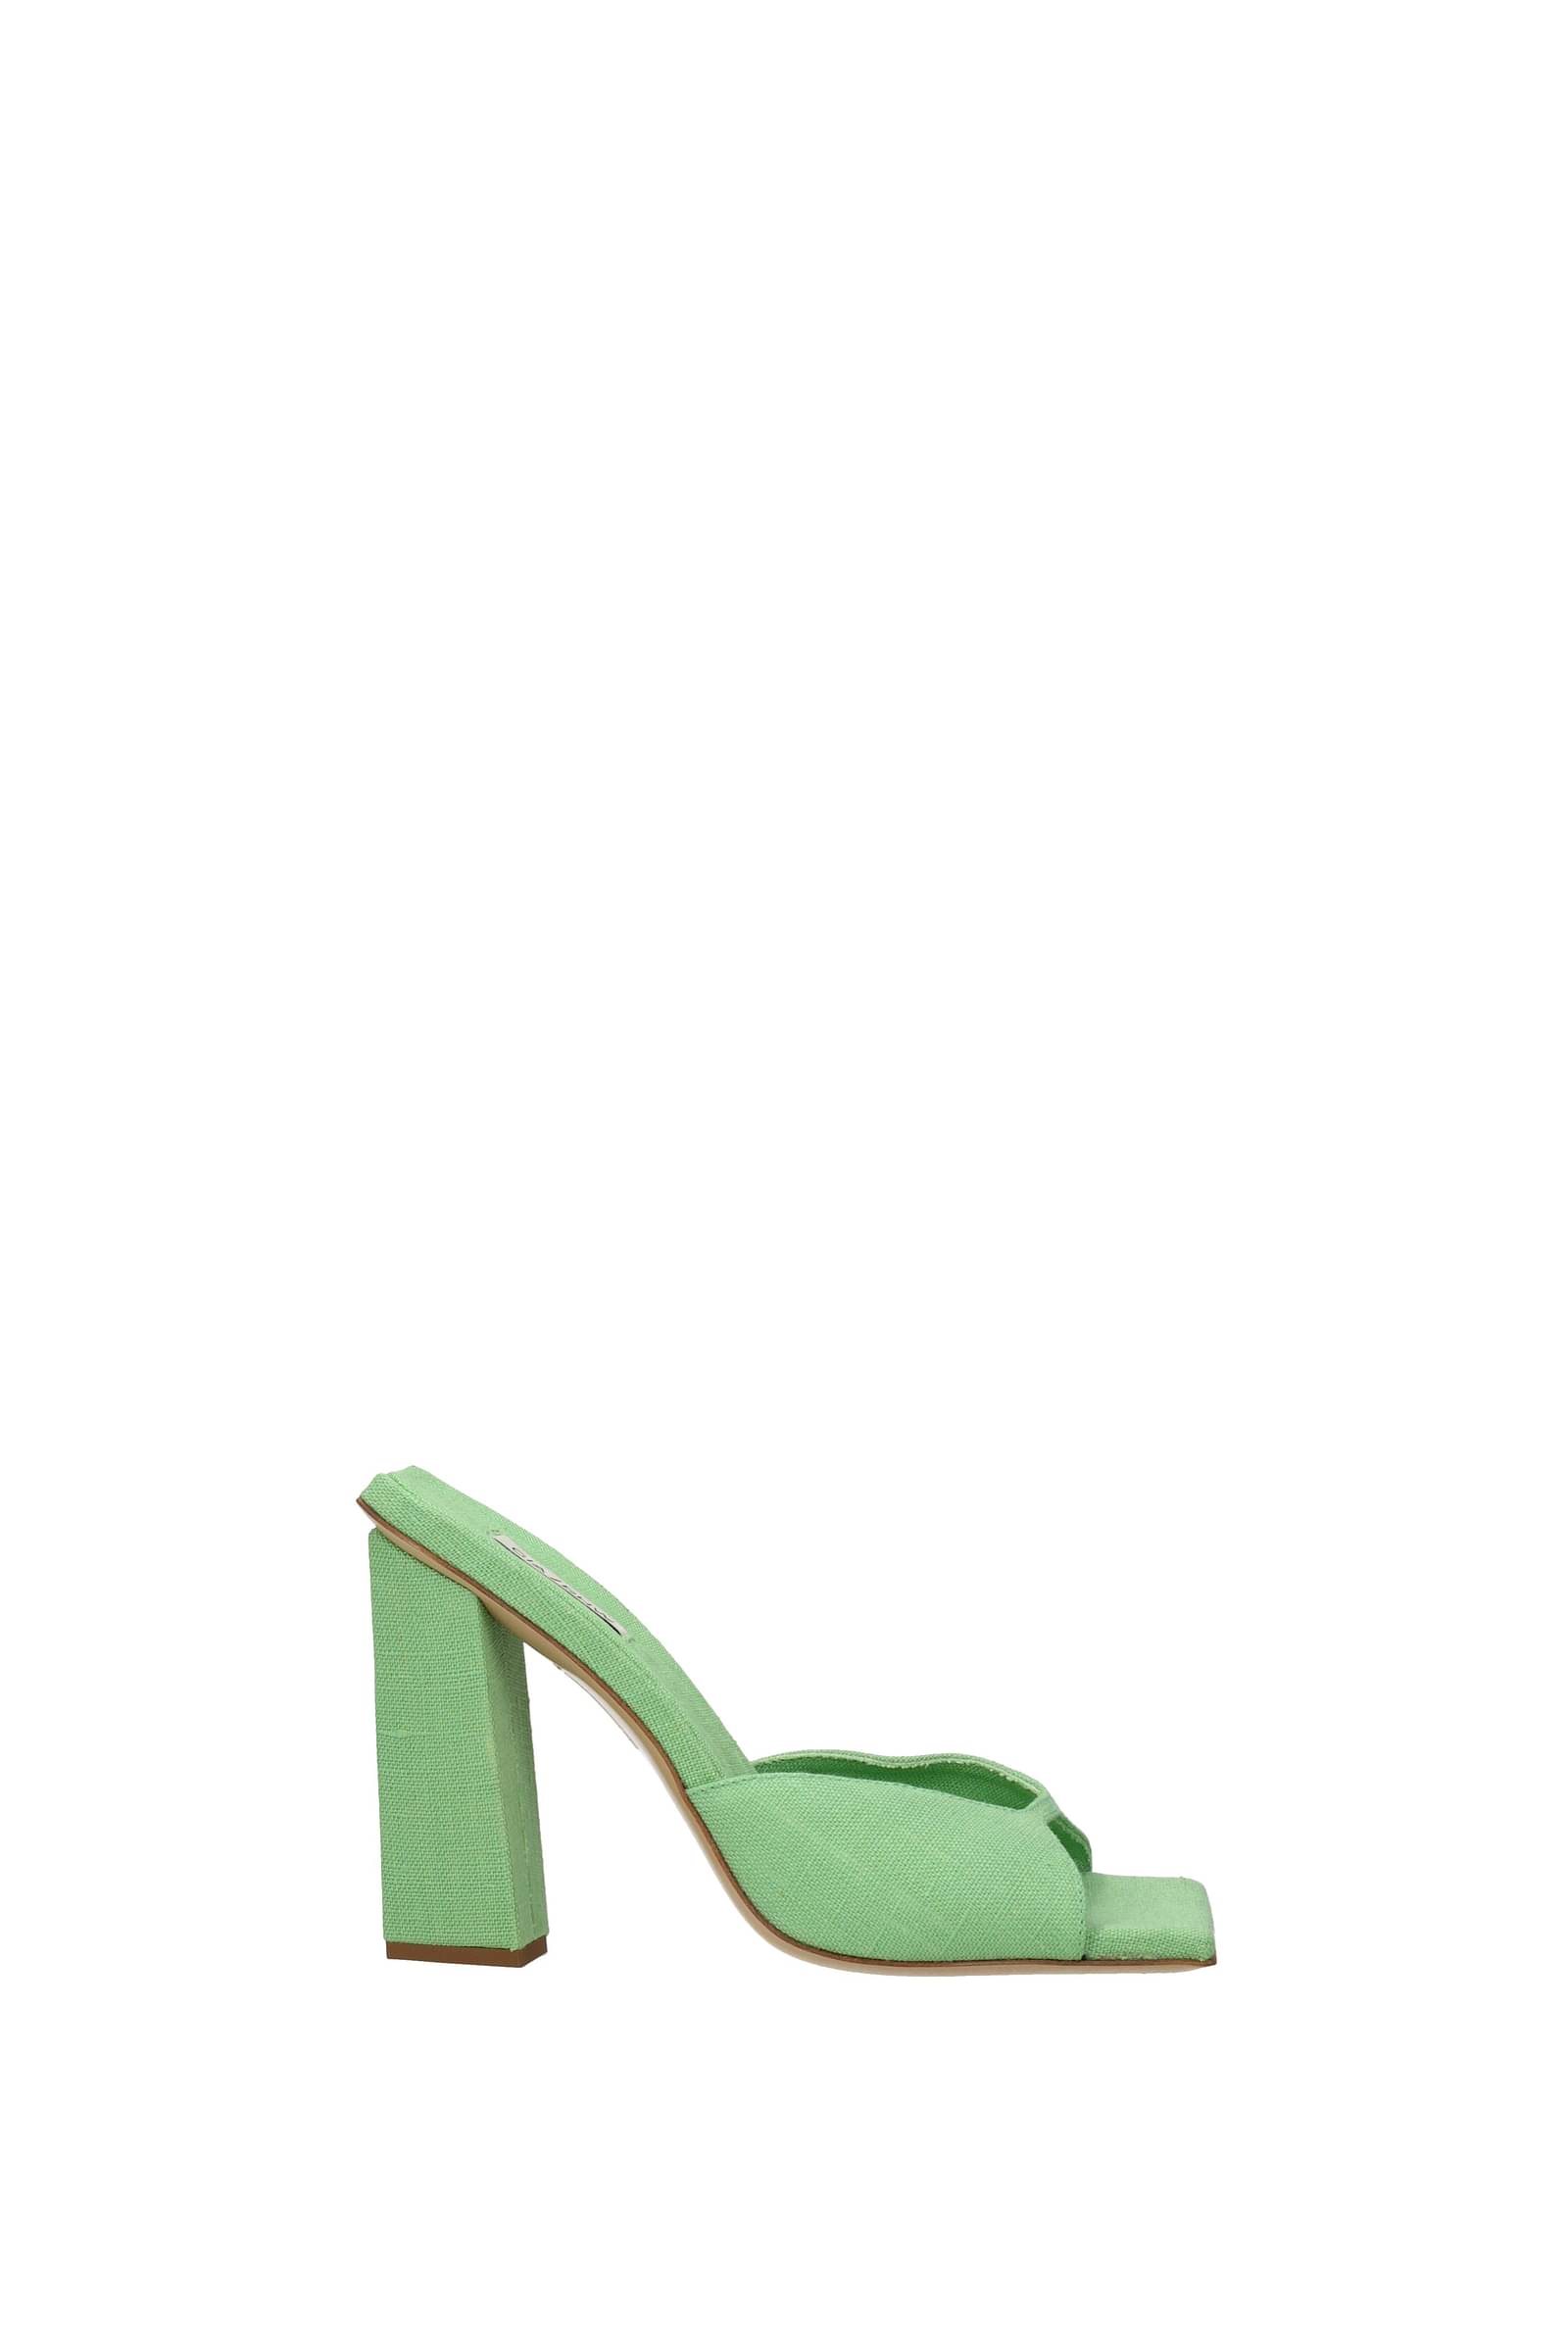 Women's Sandals Loints of Holland Visvliet Florida 31087 jade green